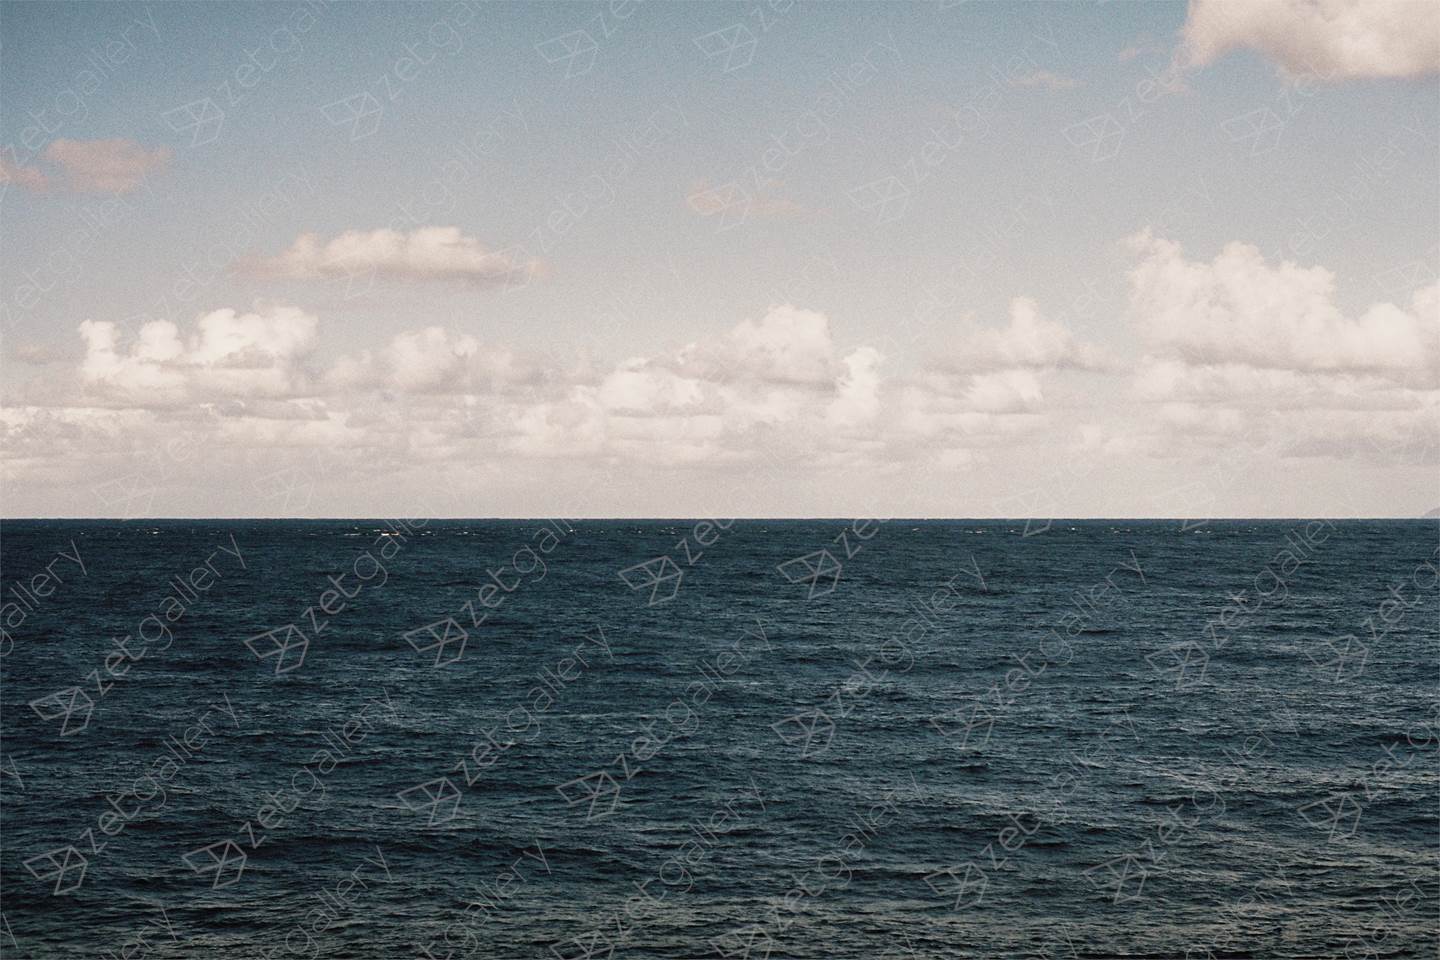 O horizonte / The horizon, original Geometric Analog Photography by Miguel De